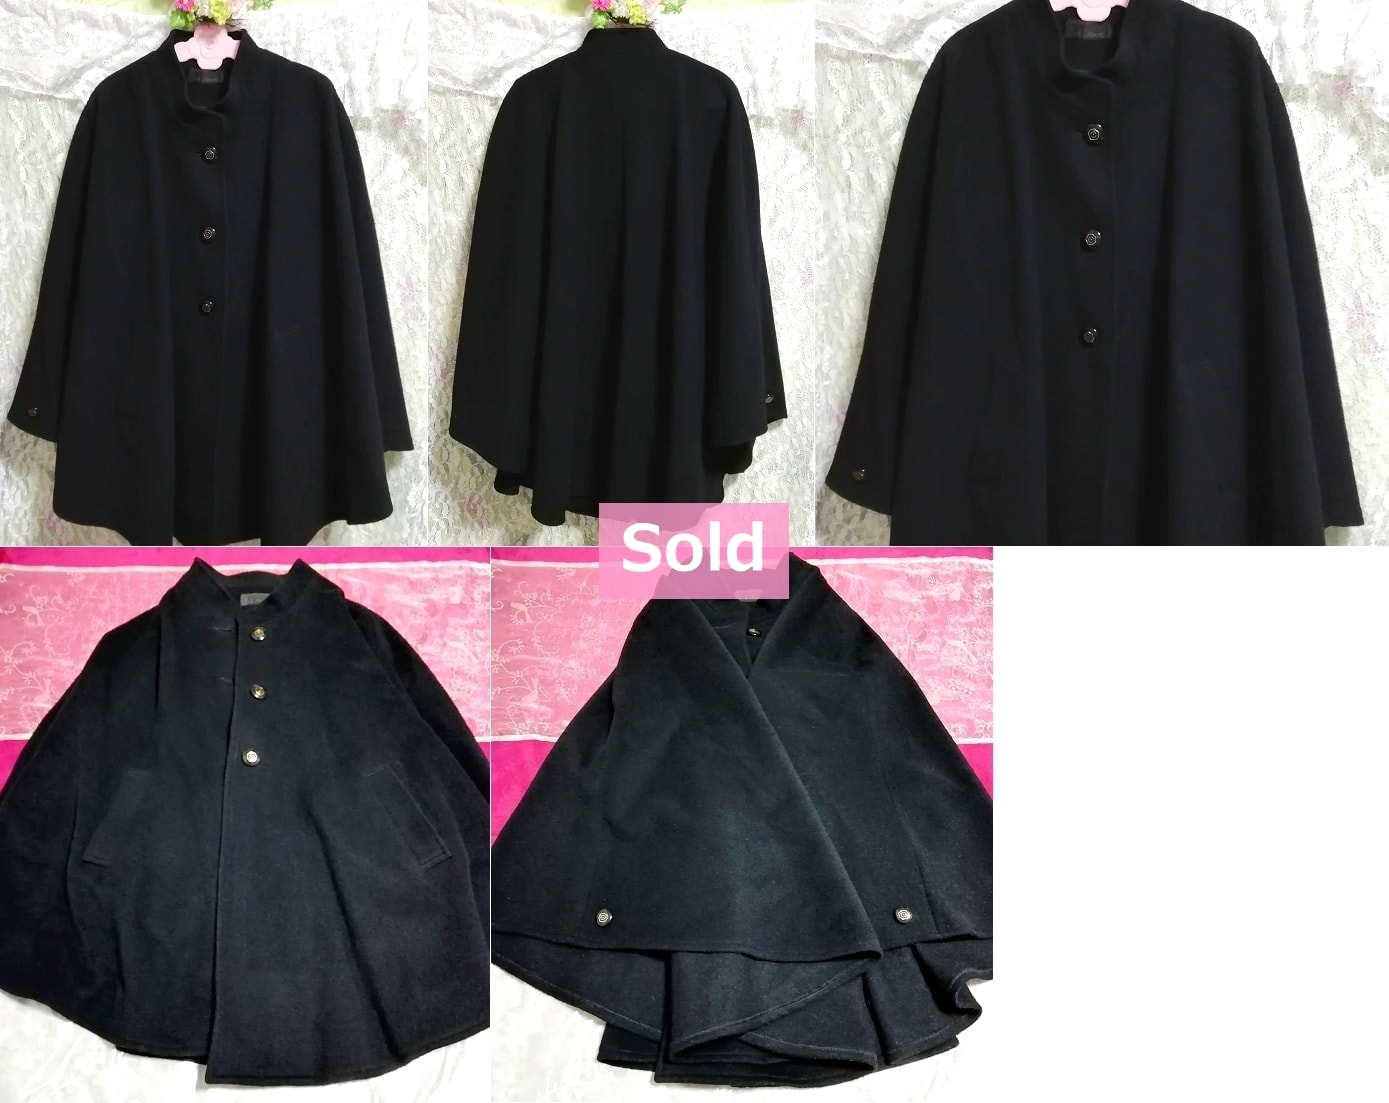 Della Rovery مصنوع في اليابان معطف أسود من المعطف مصنوع في اليابان معطف كيب أسود